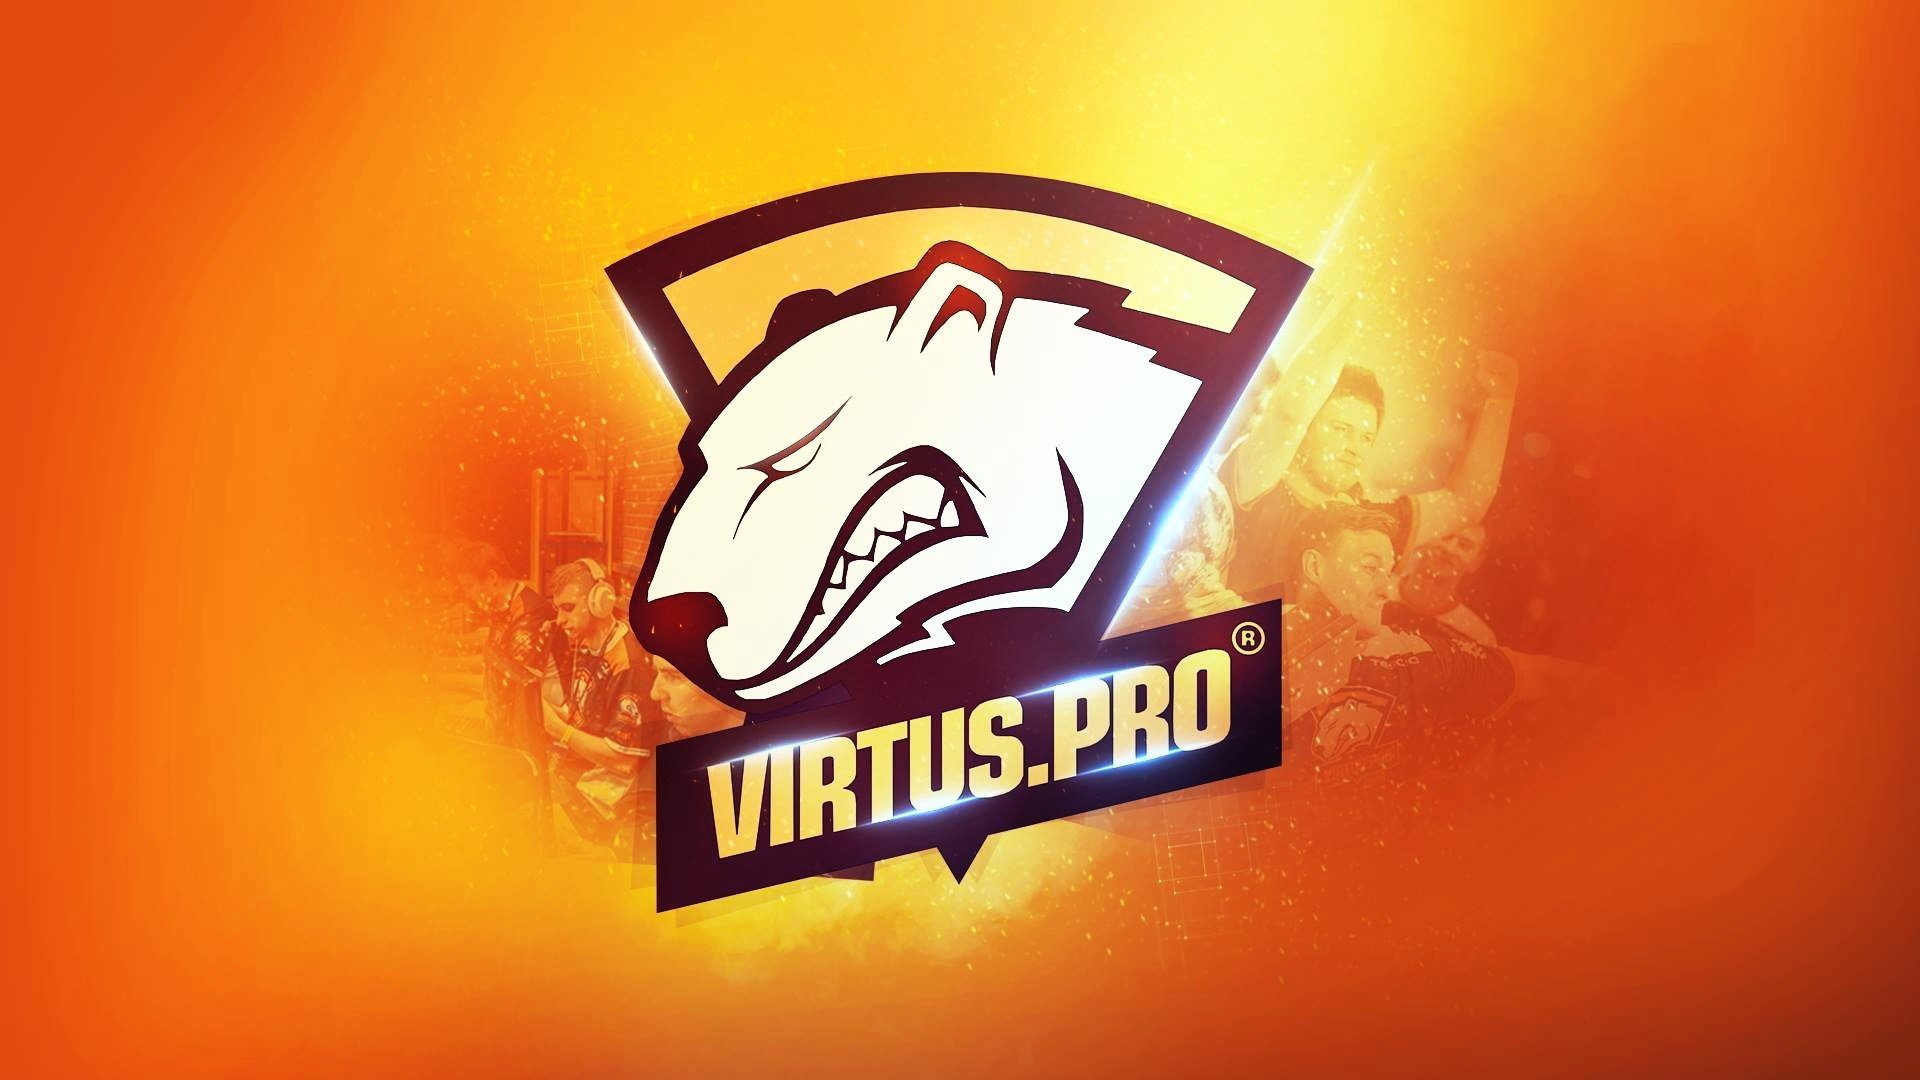 Вп х. КС го Virtus Pro. Команда Virtus Pro CS go. Виртус про стандофф 2. Virtus Pro логотип.